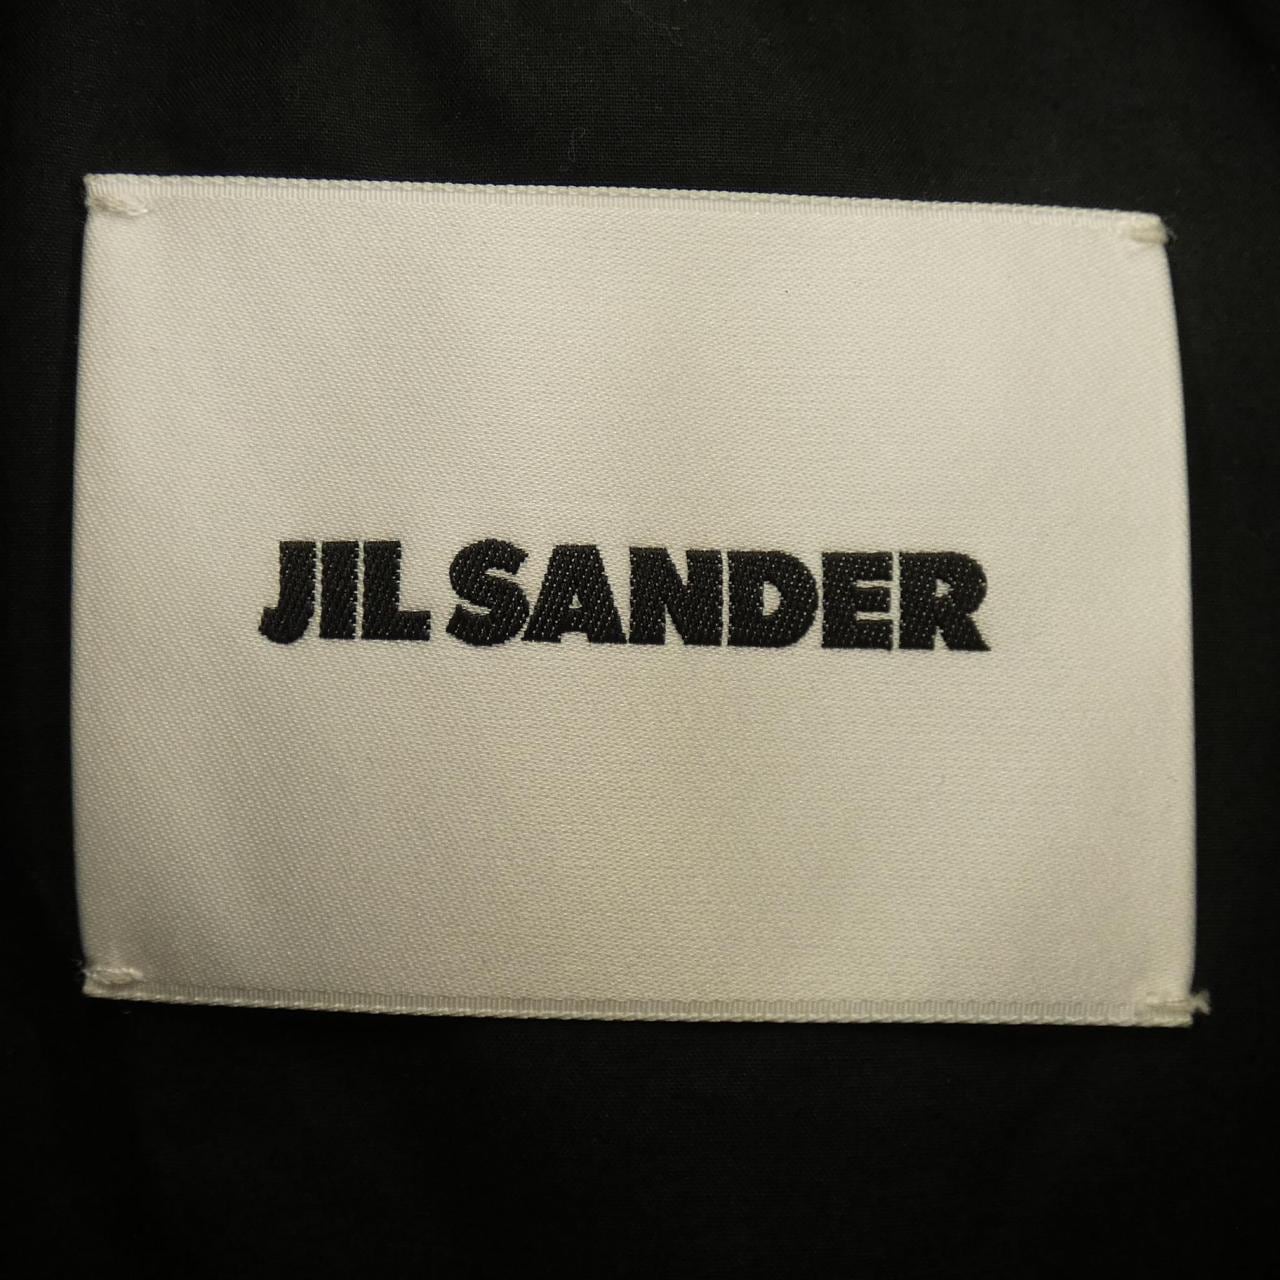 ジルサンダー JIL SANDER シャツ